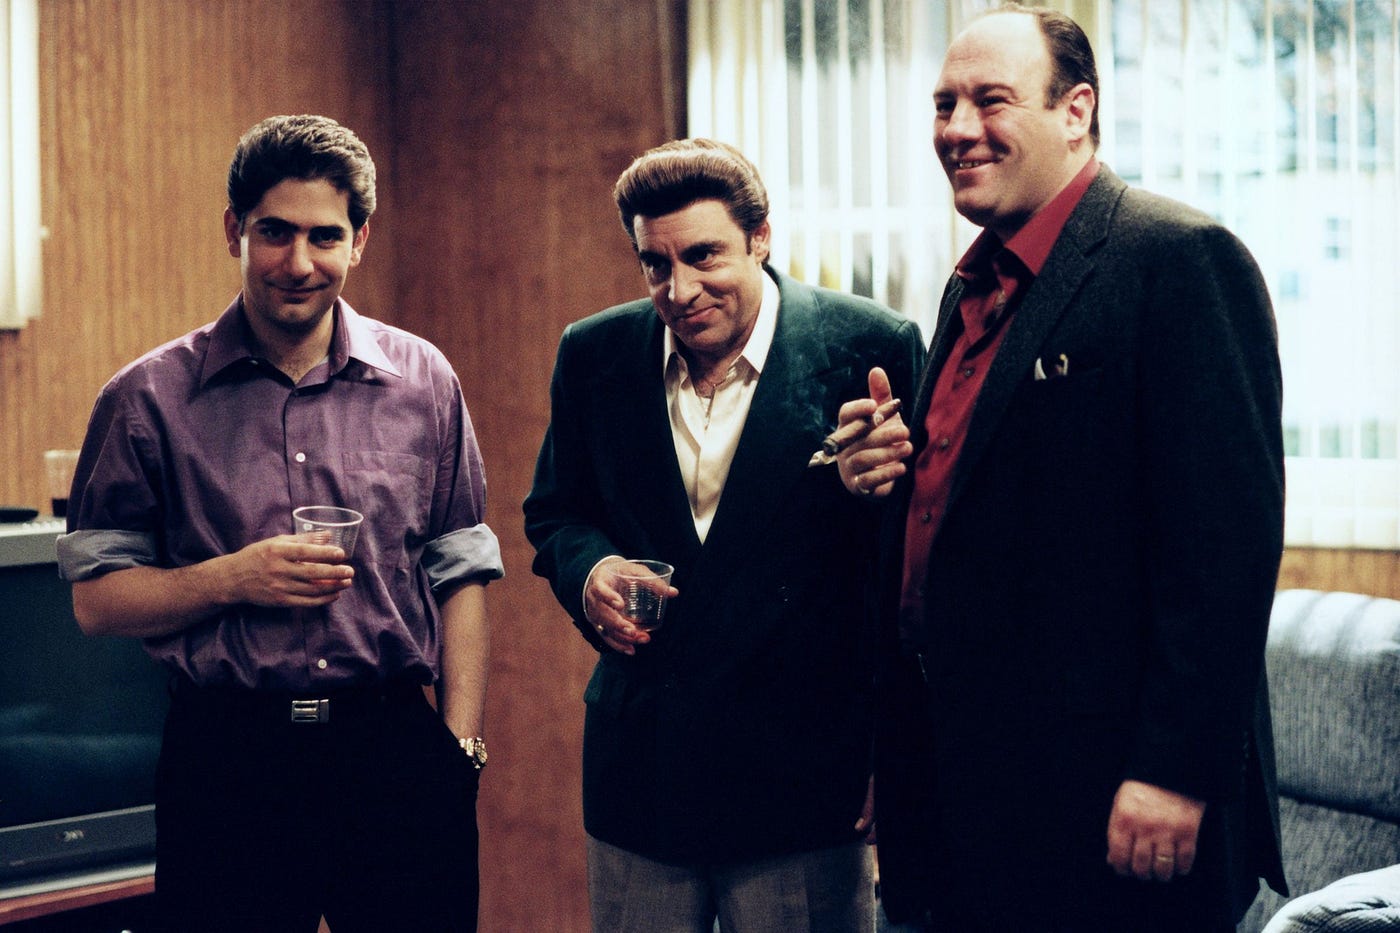 Michael Imperioli, Steven Van Zandt and James Gandolfini in ‘The Sopranos.’